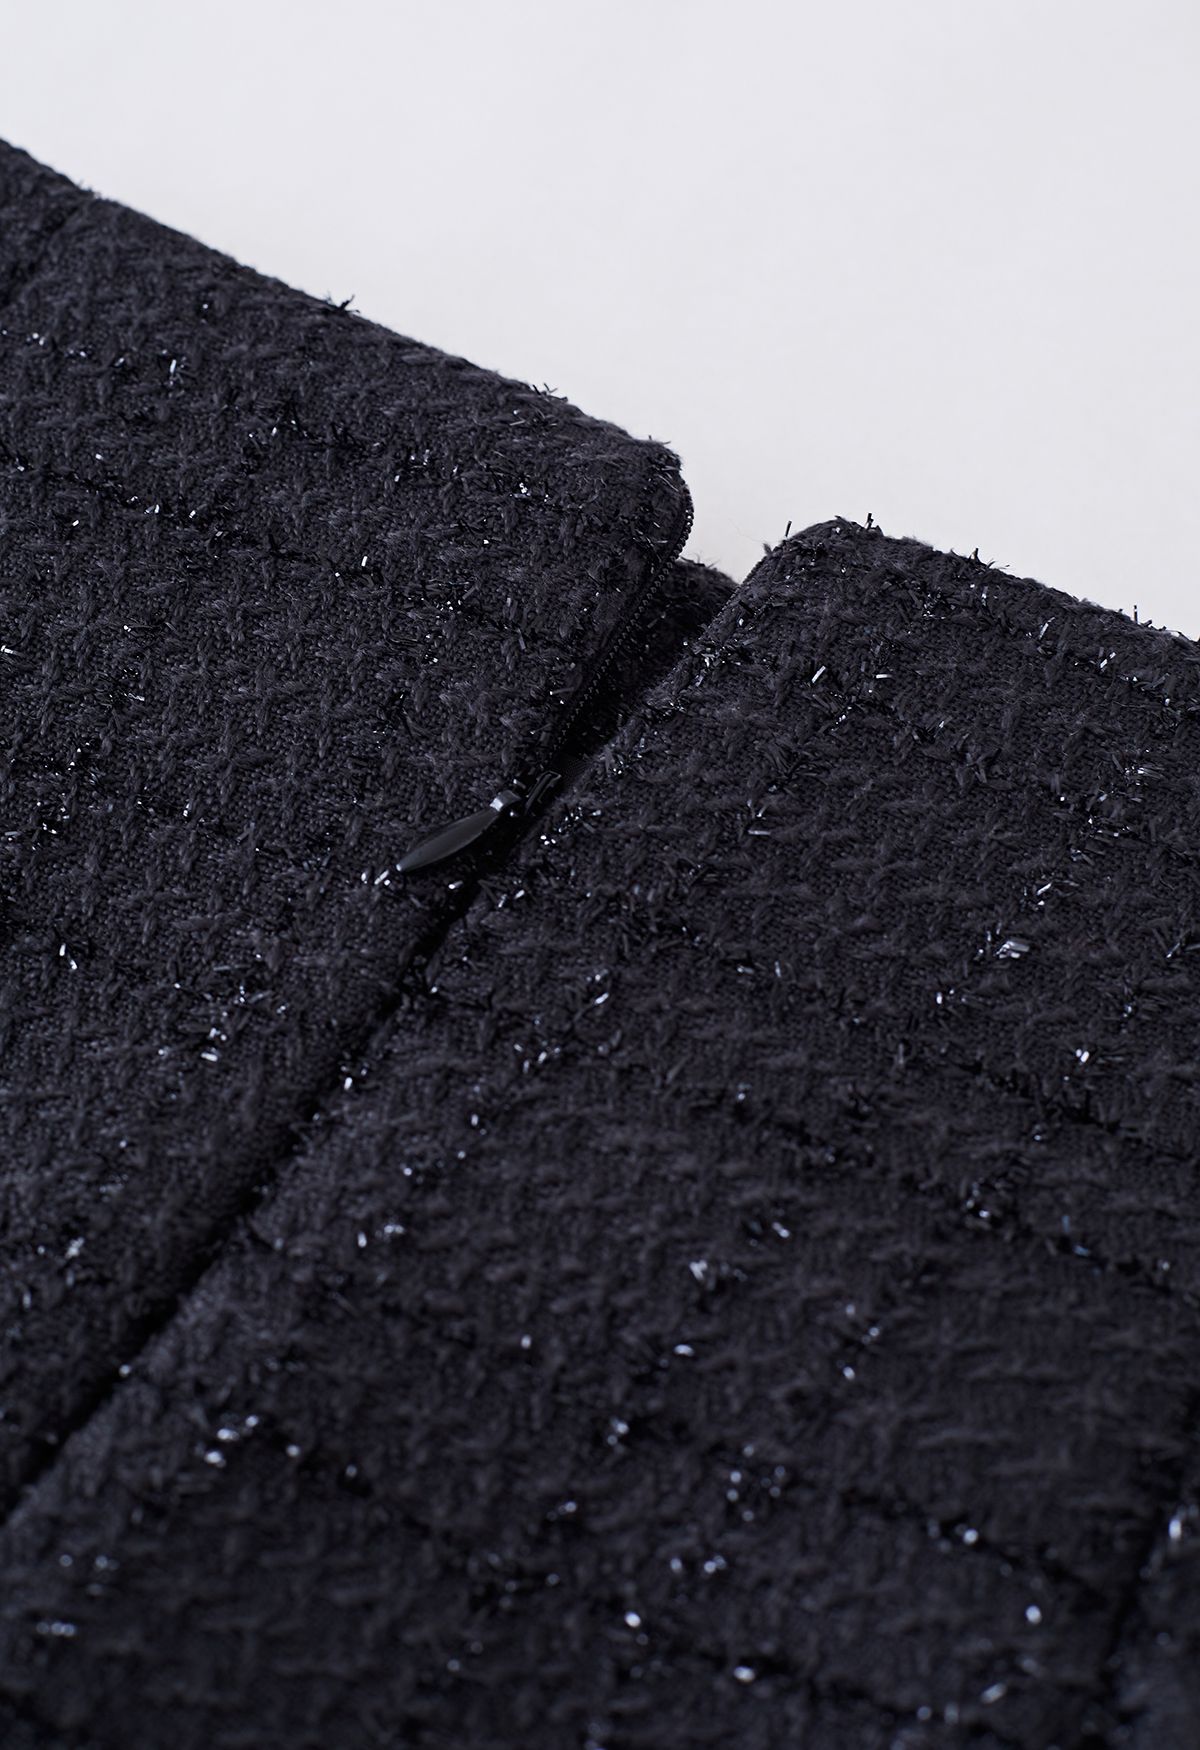 Glint Button Seam Detail Tweed Mini Skirt in Black